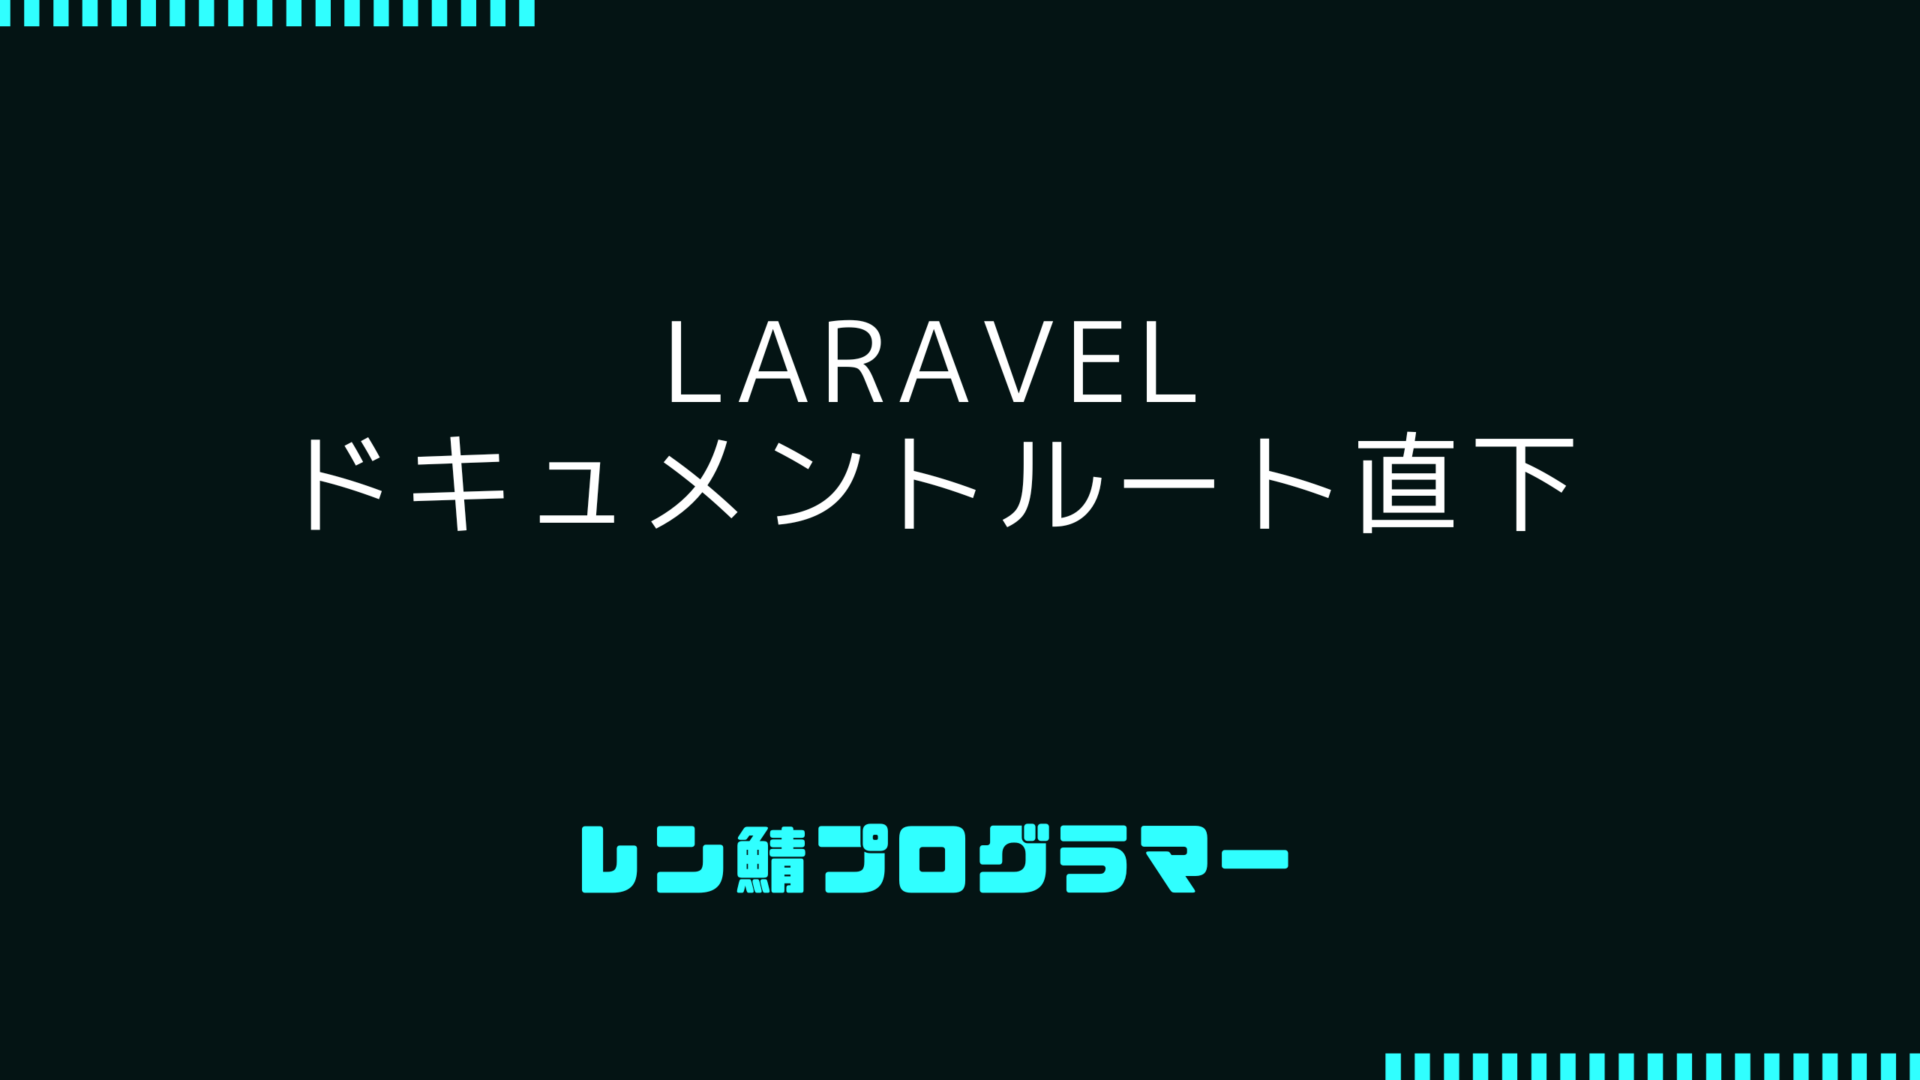 Laravelをドキュメントルート直下に置いて公開する.htaccess